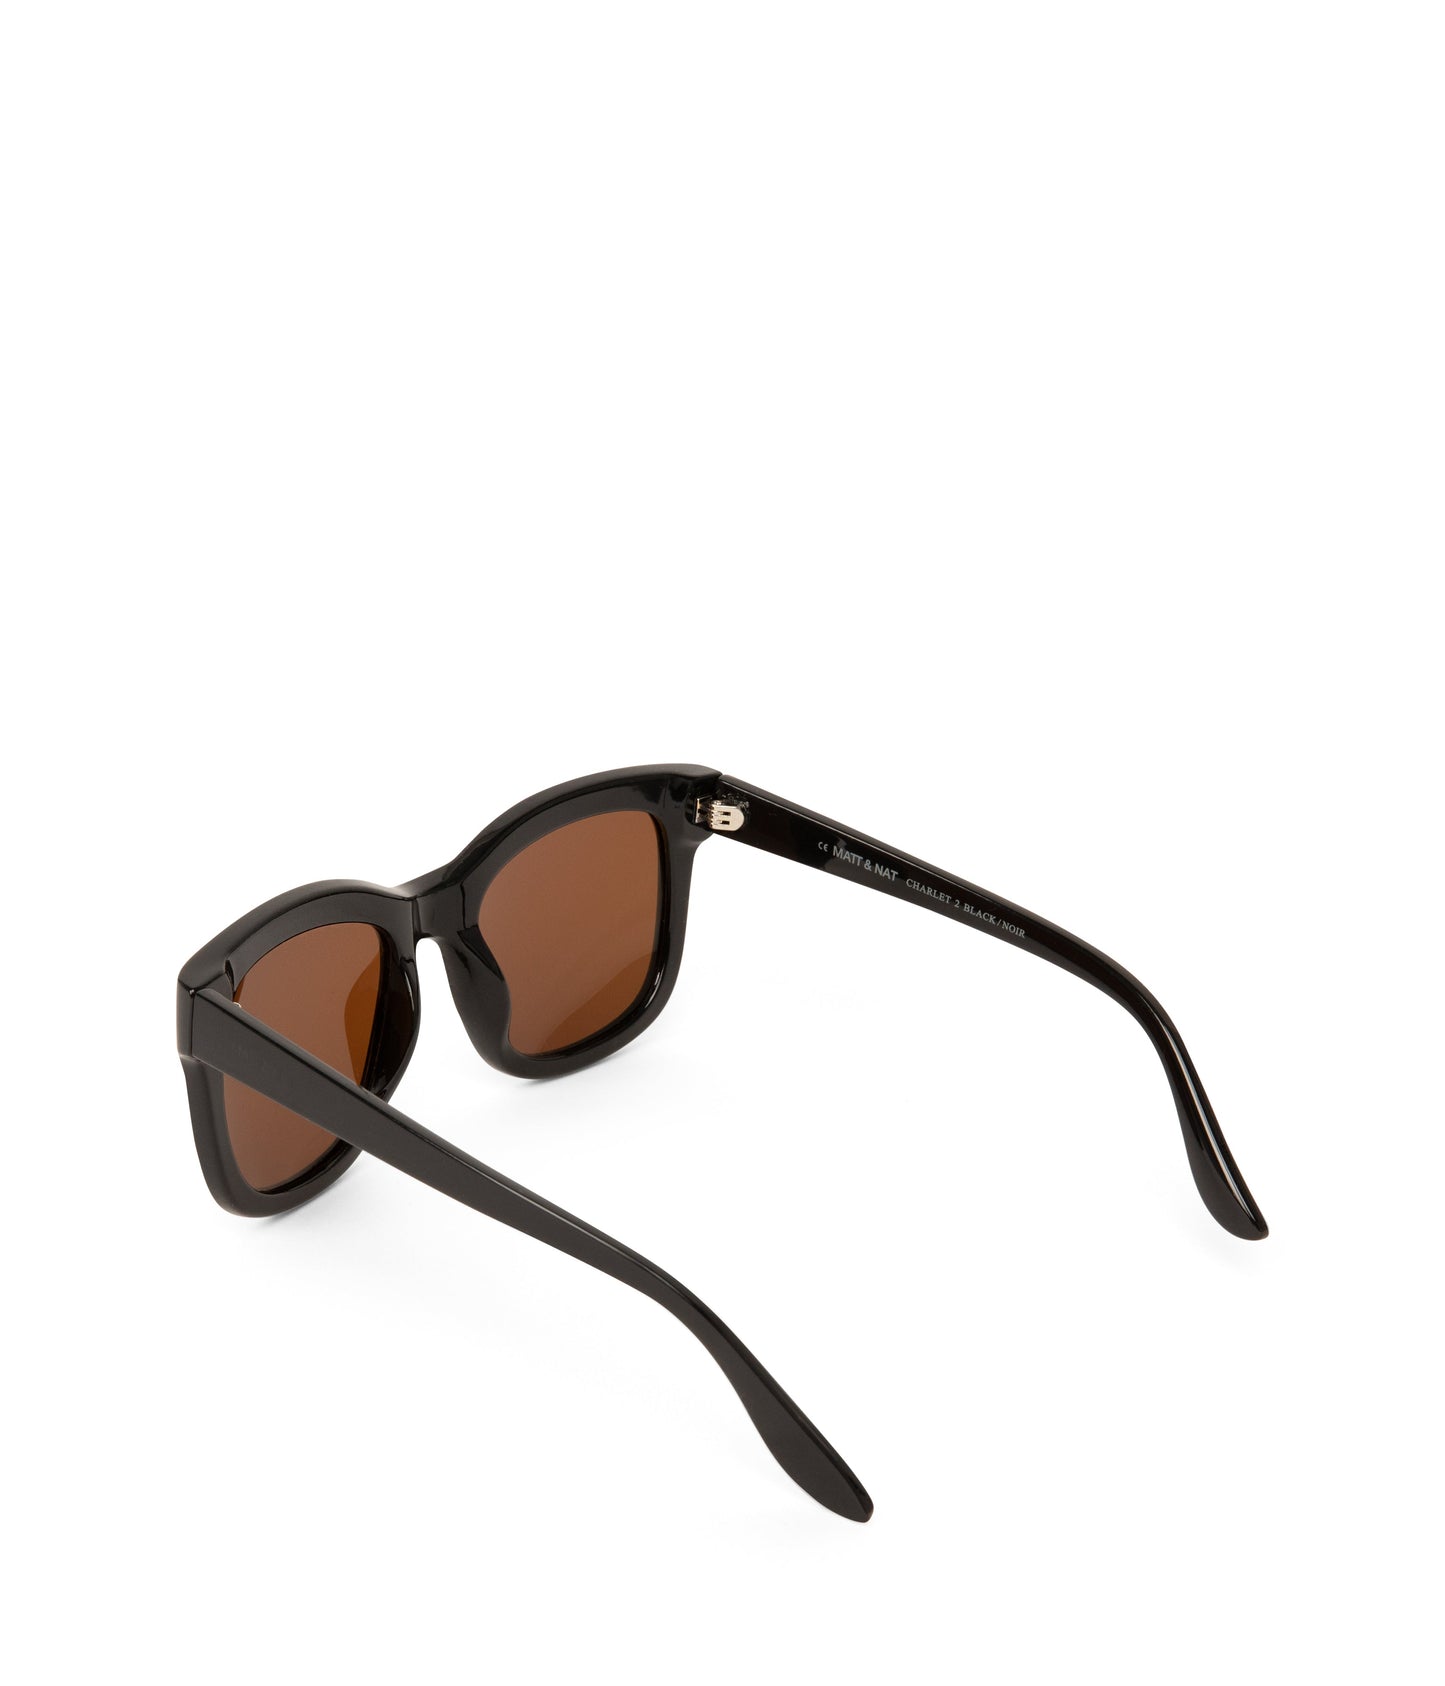 CHARLET-2 Recycled Wayfarer Sunglasses | Color: Black, Brown - variant::black